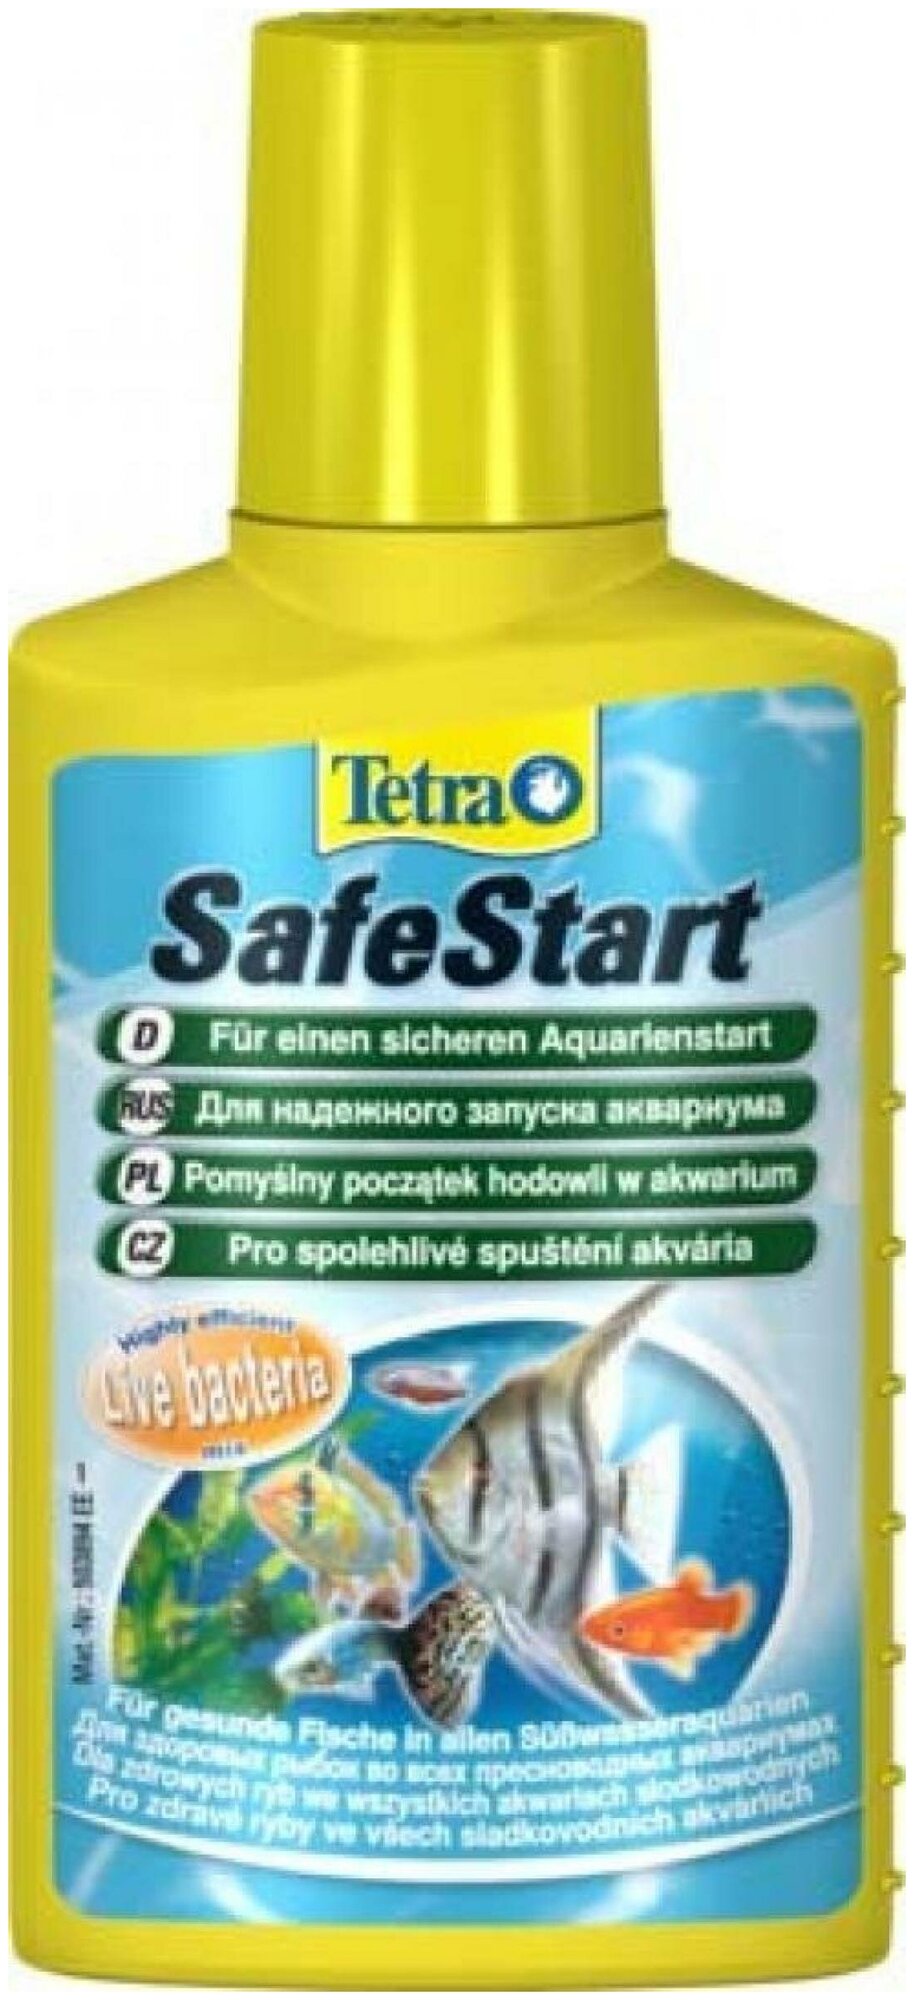 Бактериальная культура Tetra Safe Start для запуска нового аквариума, 100мл - фото №8